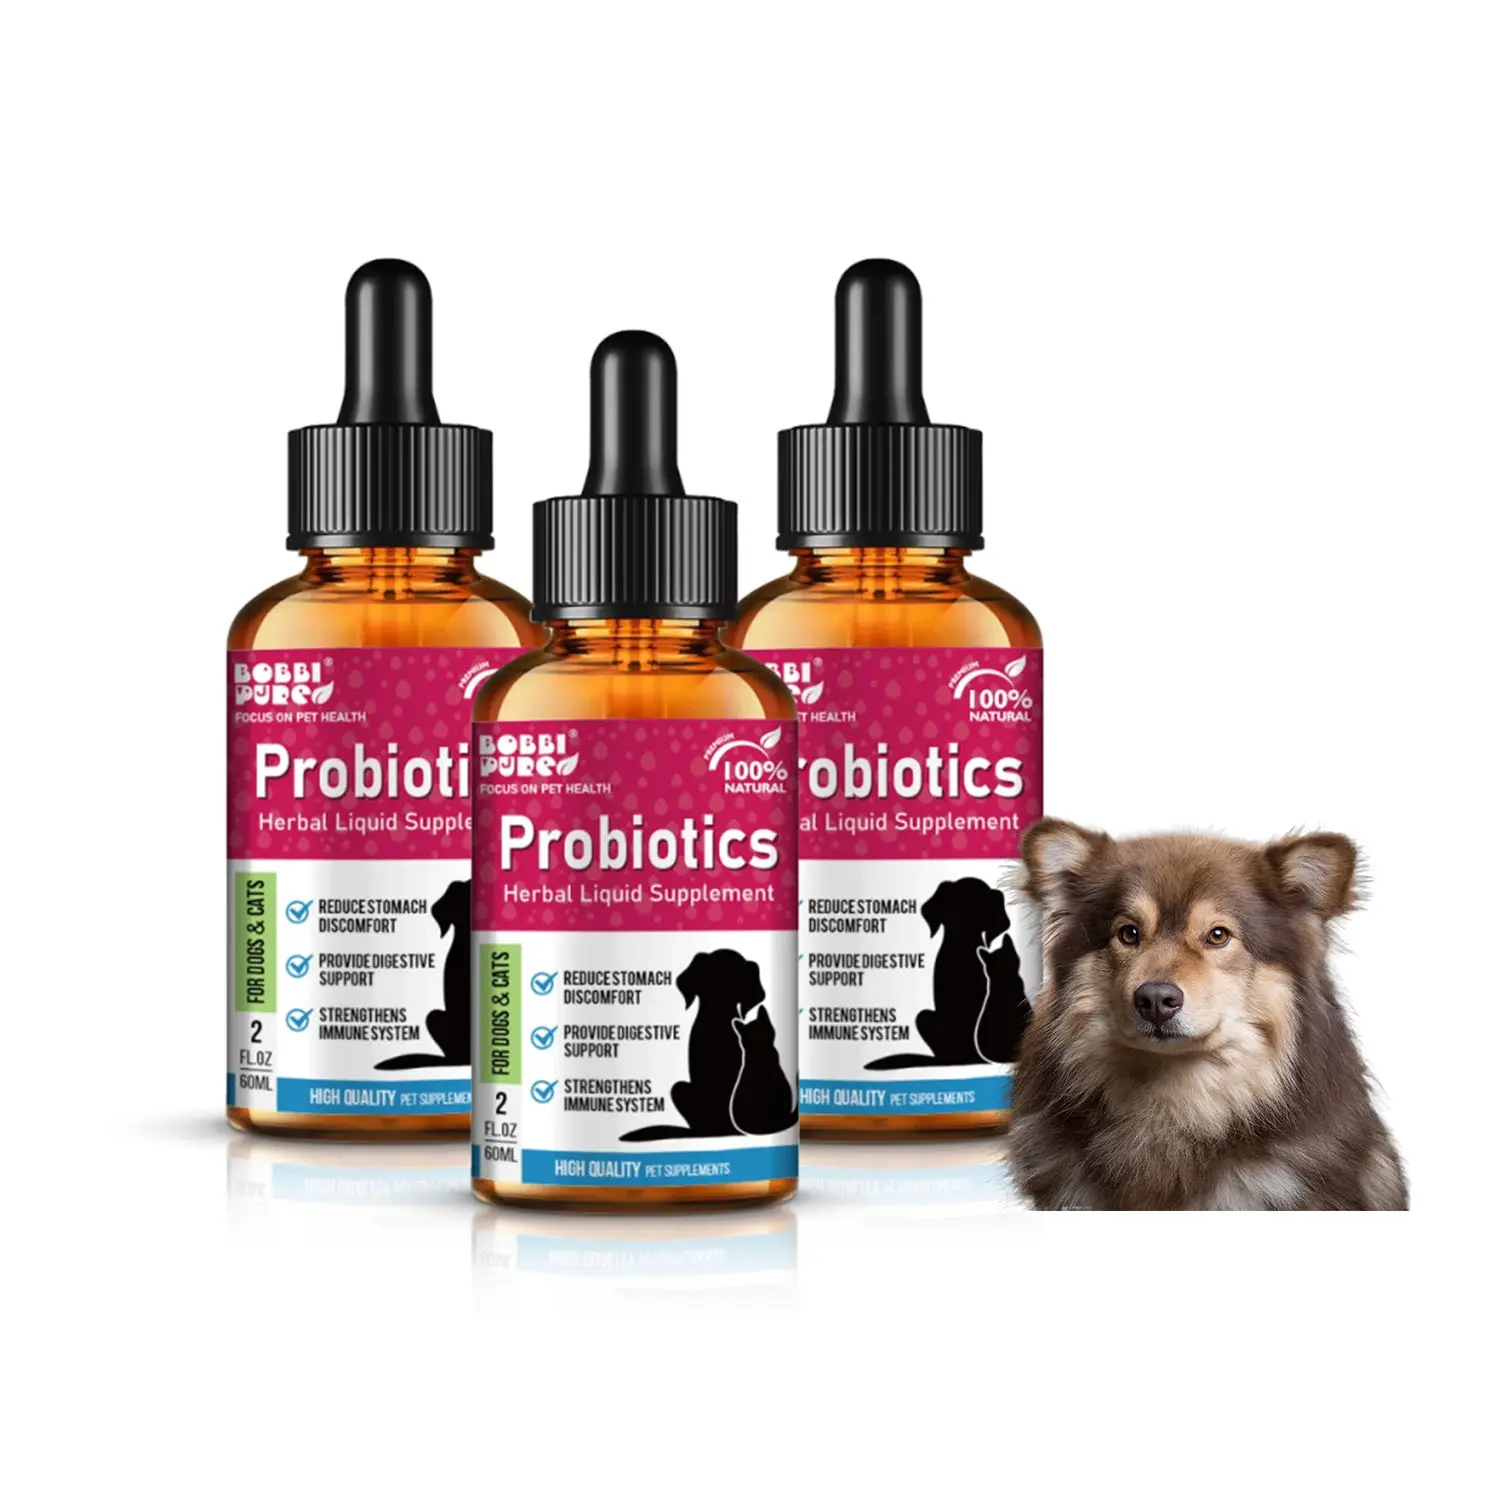 Gran oferta de suplementos naturales probióticos para el cuidado de la salud de mascotas, suplementos líquidos que reducen los problemas estomacales como la hinchazón